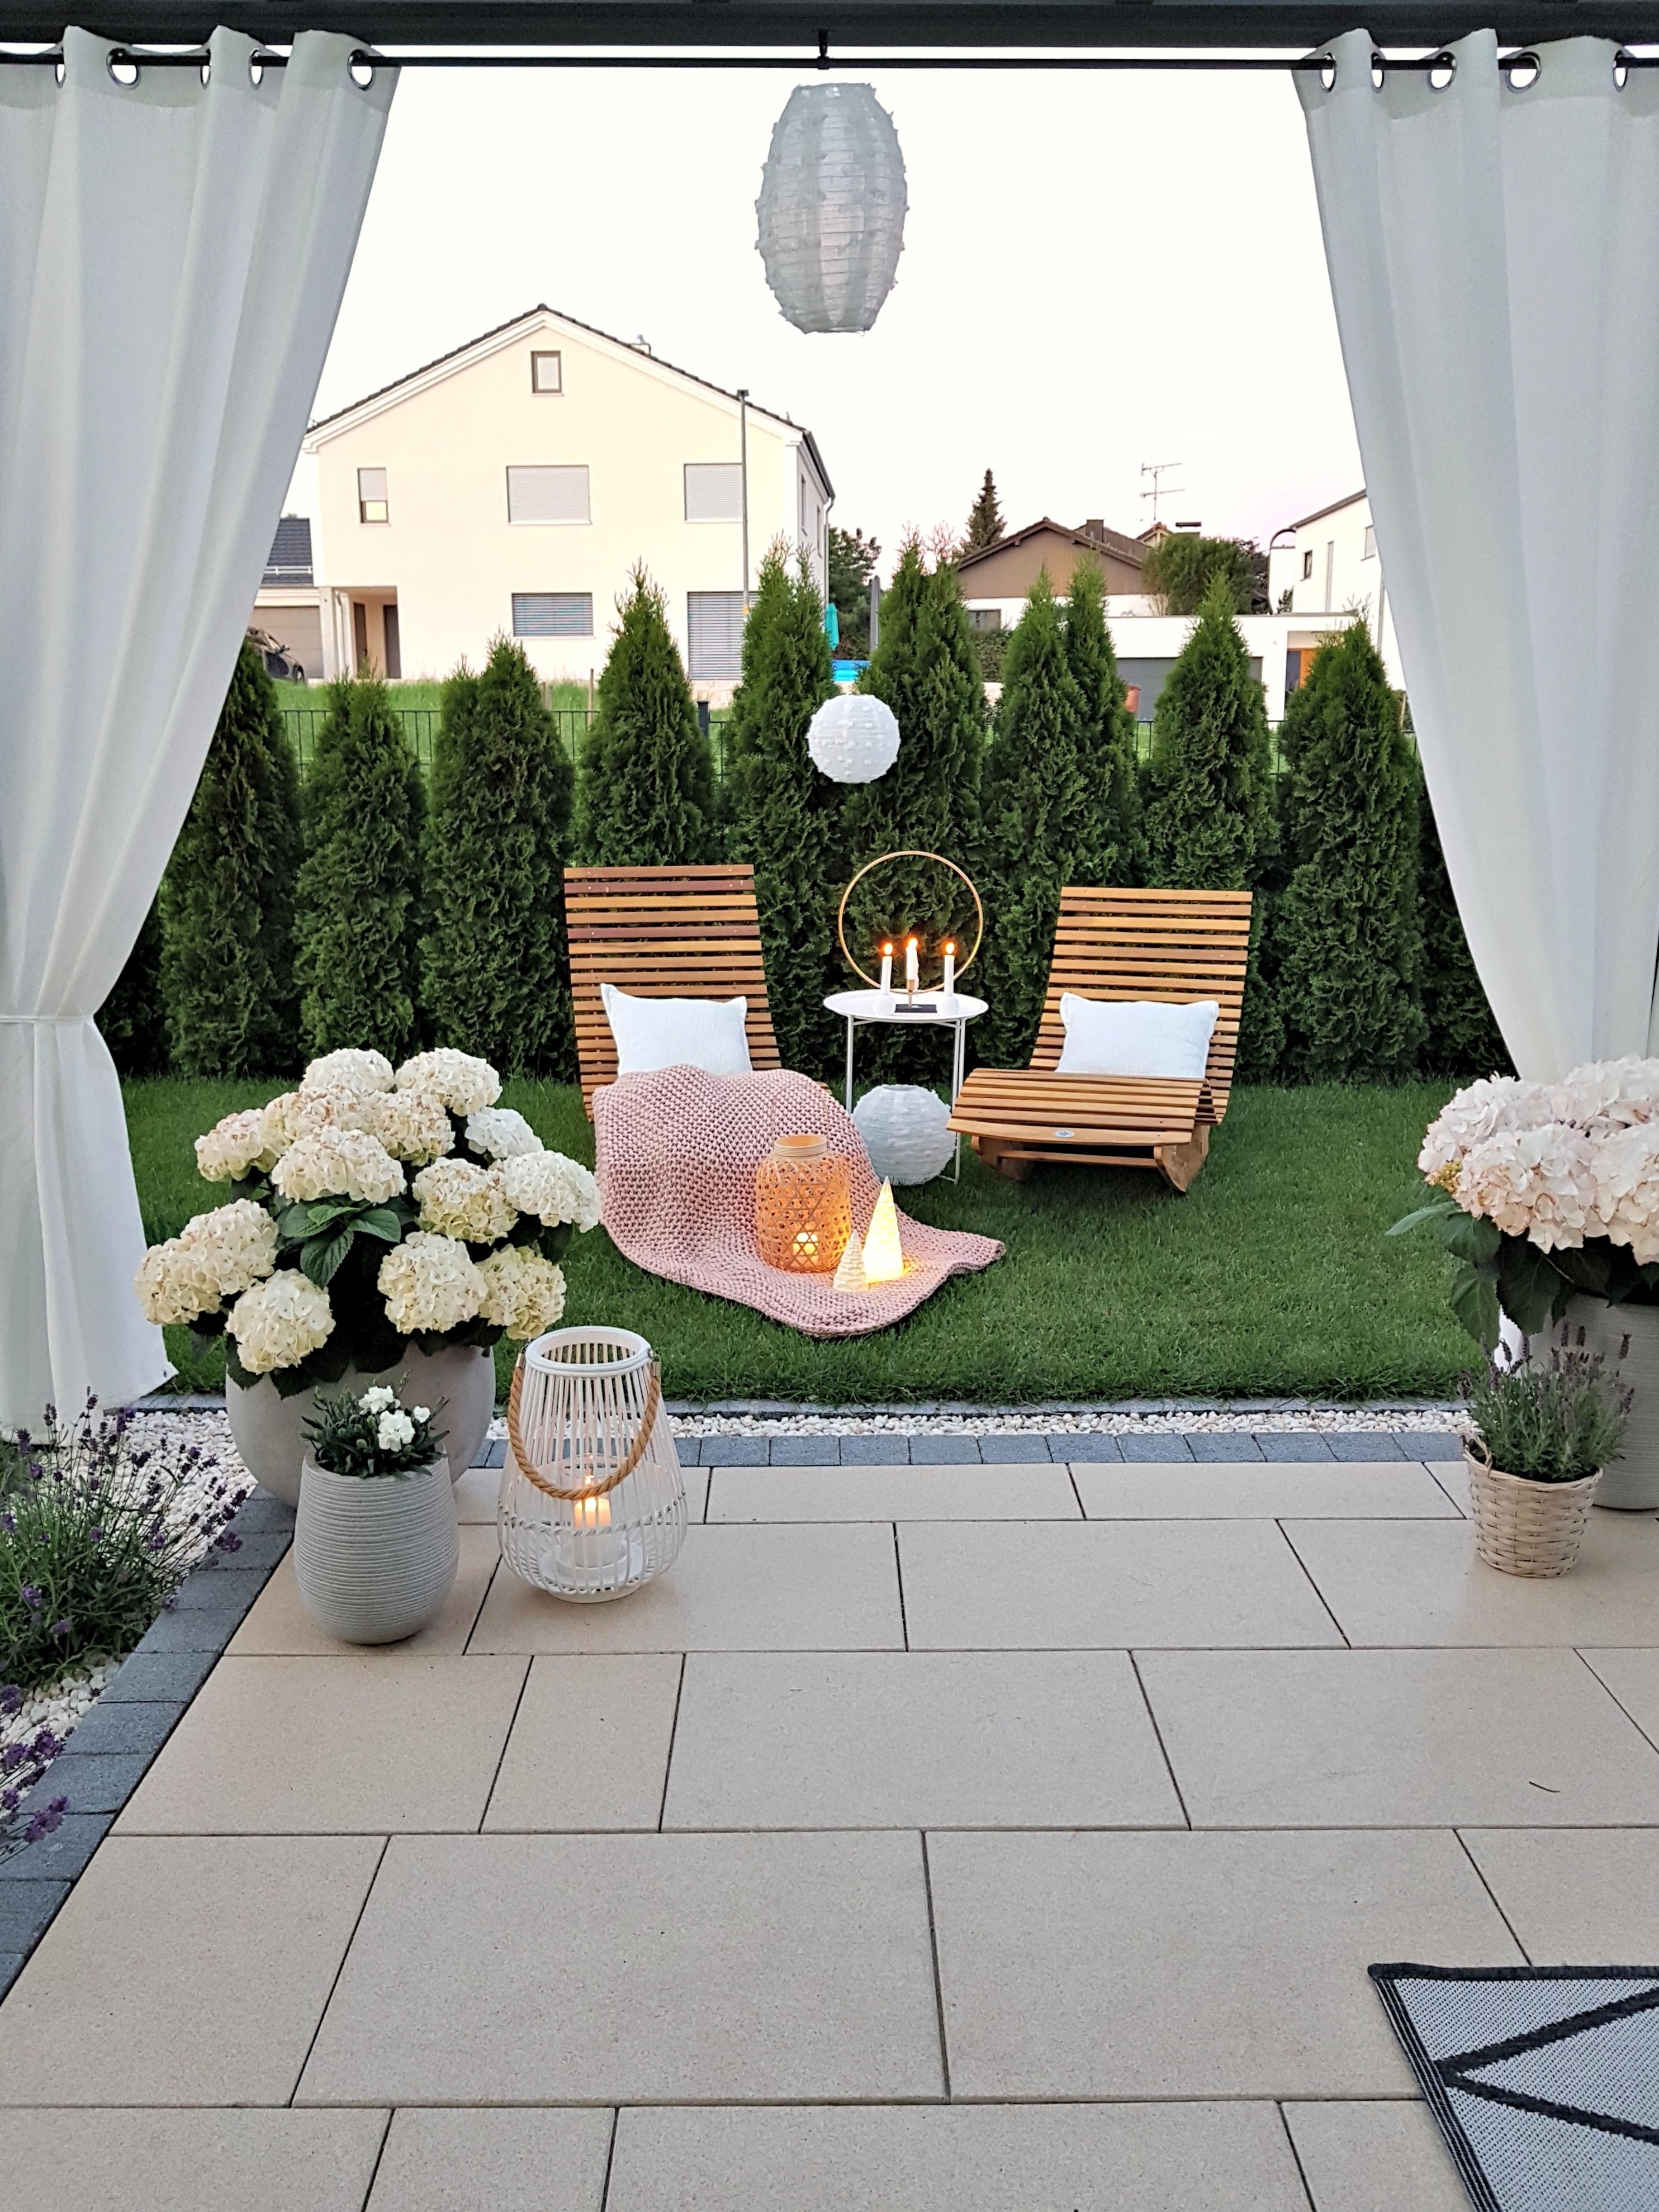 #skandistyle #outdoorwohnzimmer #terrassengestaltung #relaxen #garteninspo #terrasse #hortensienliebe #laterne #outdoor